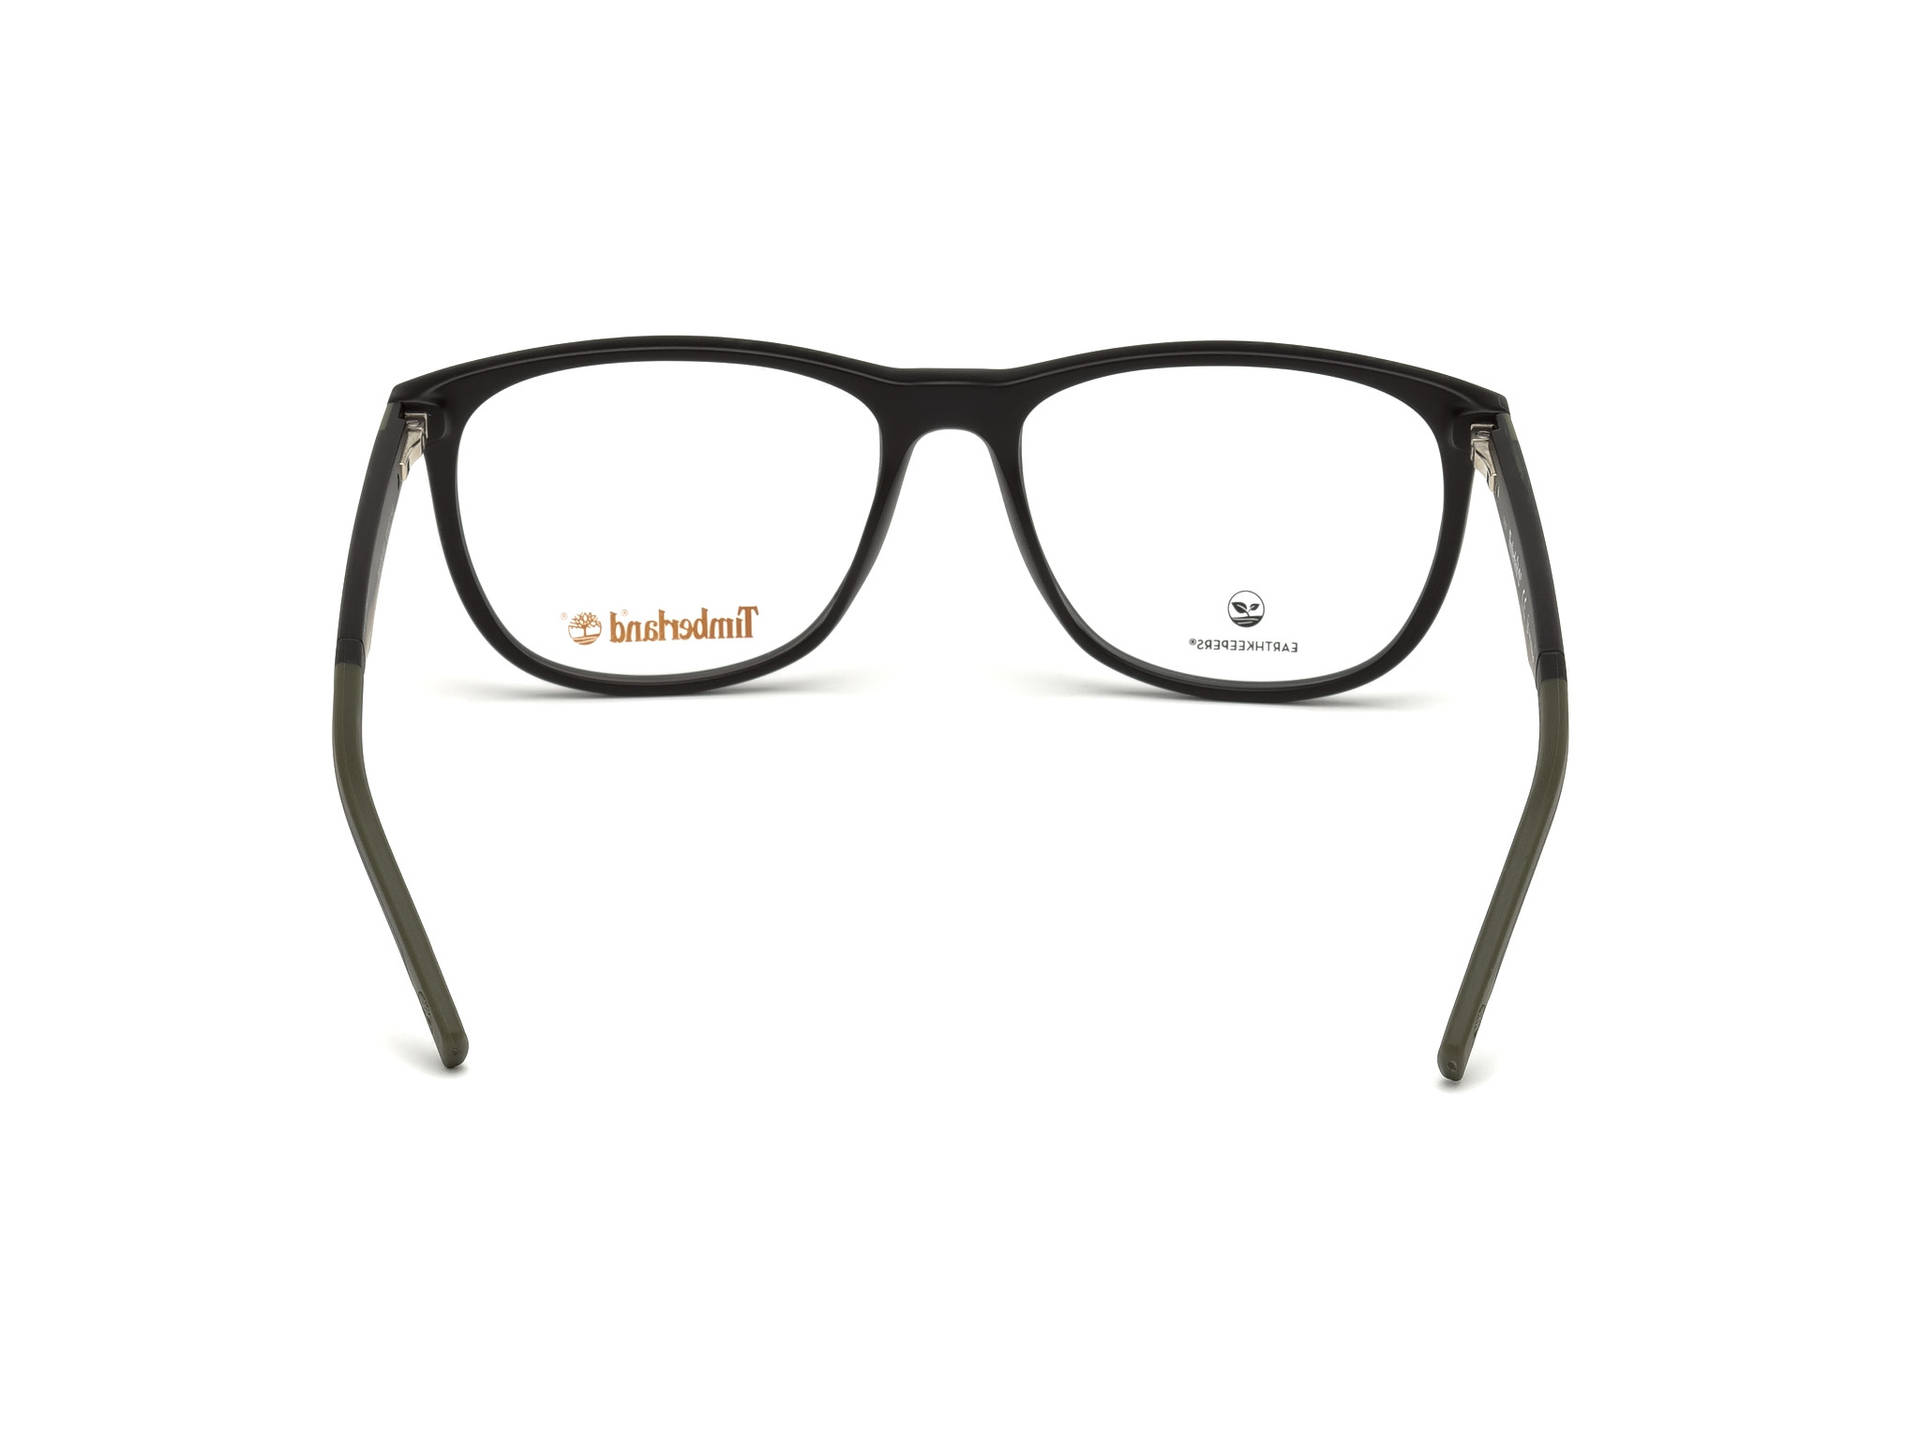 Timberland Eyeglasses Lenses Wallpaper